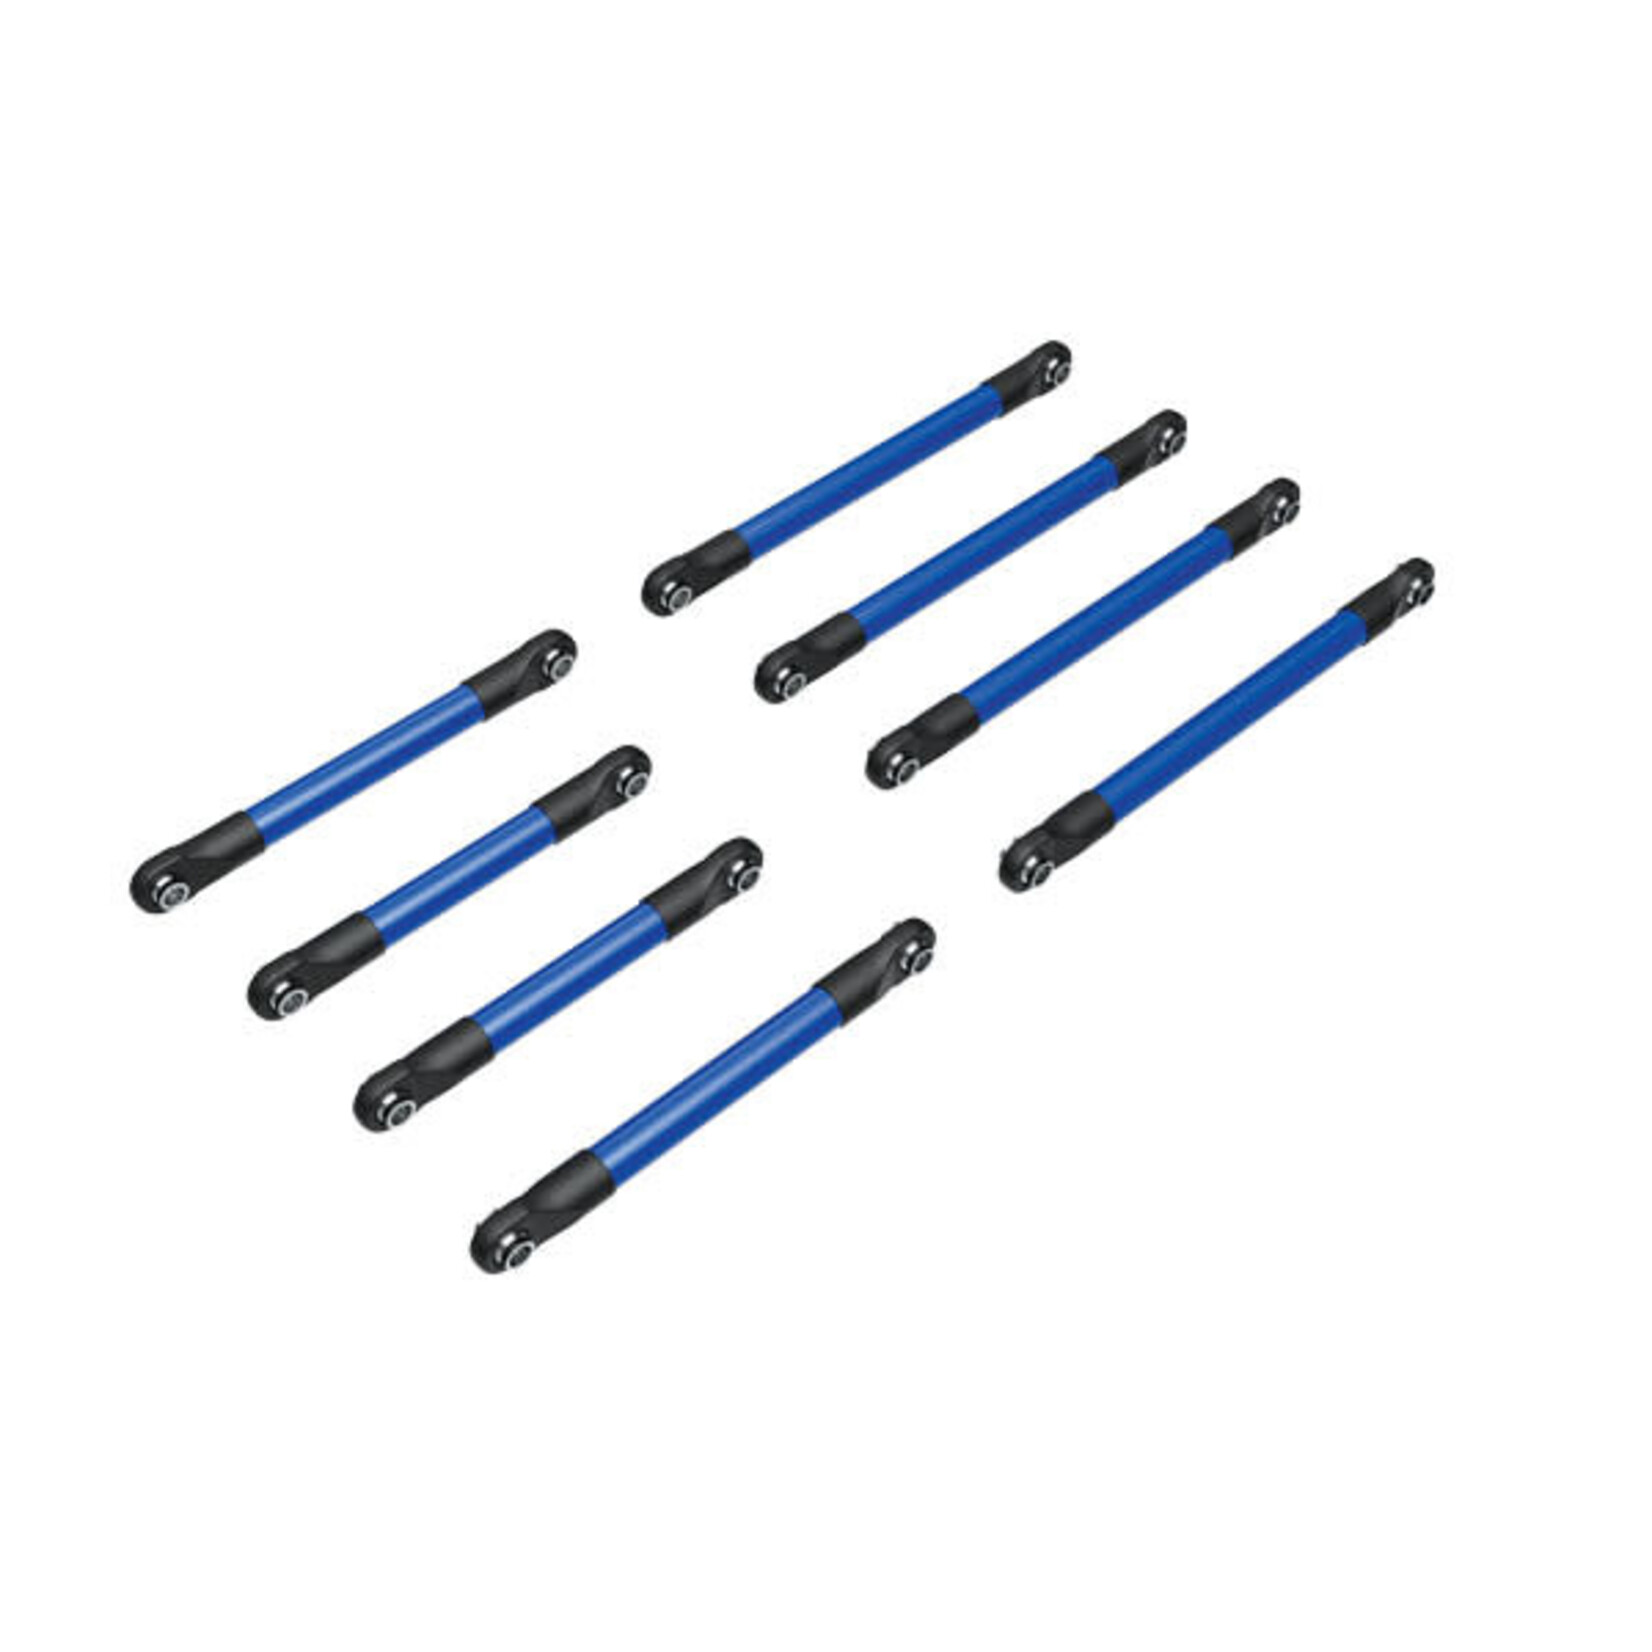 Traxxas Traxxas TRX-4M Aluminum Suspension Link Set (Blue) (8) #9749-BLUE